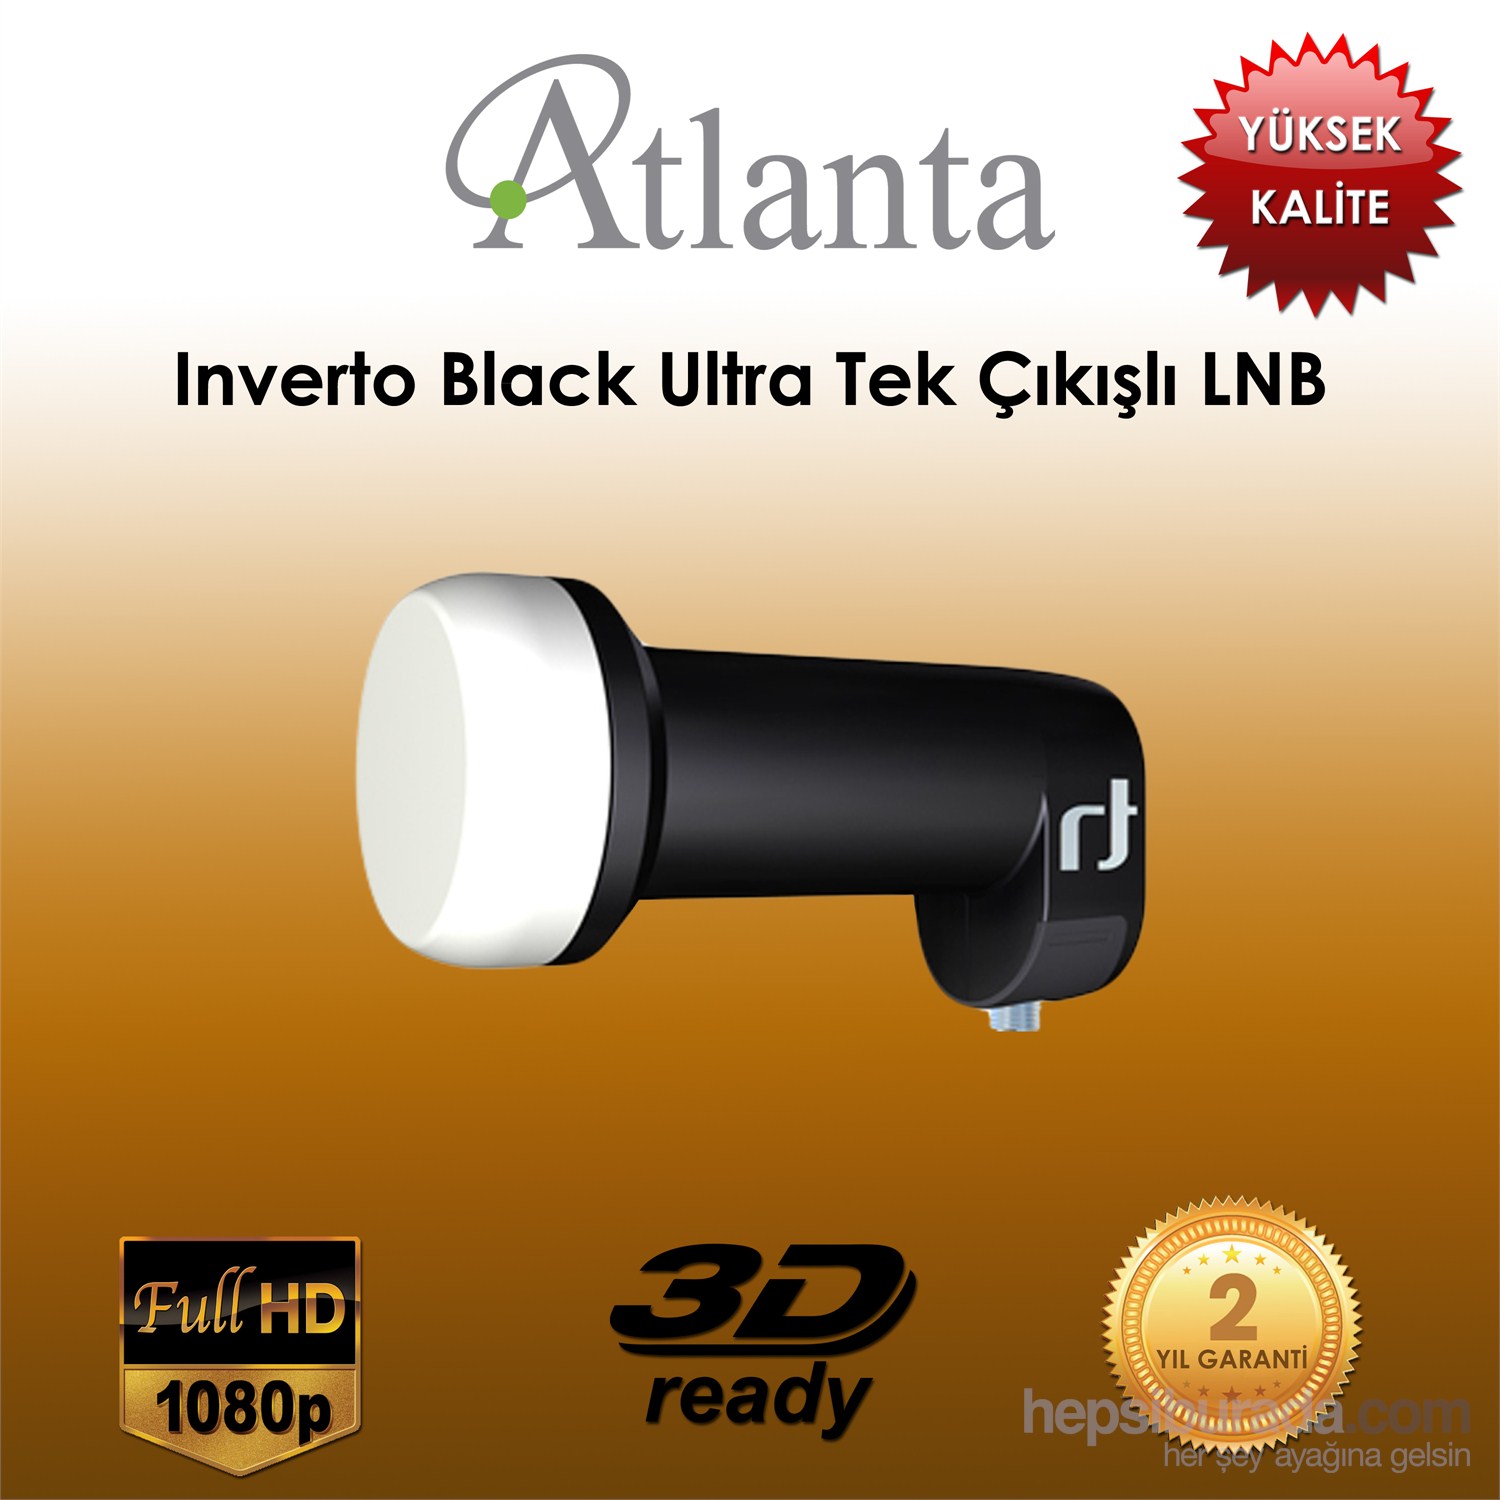 Atlanta Inverto Black Ultra Single LNB